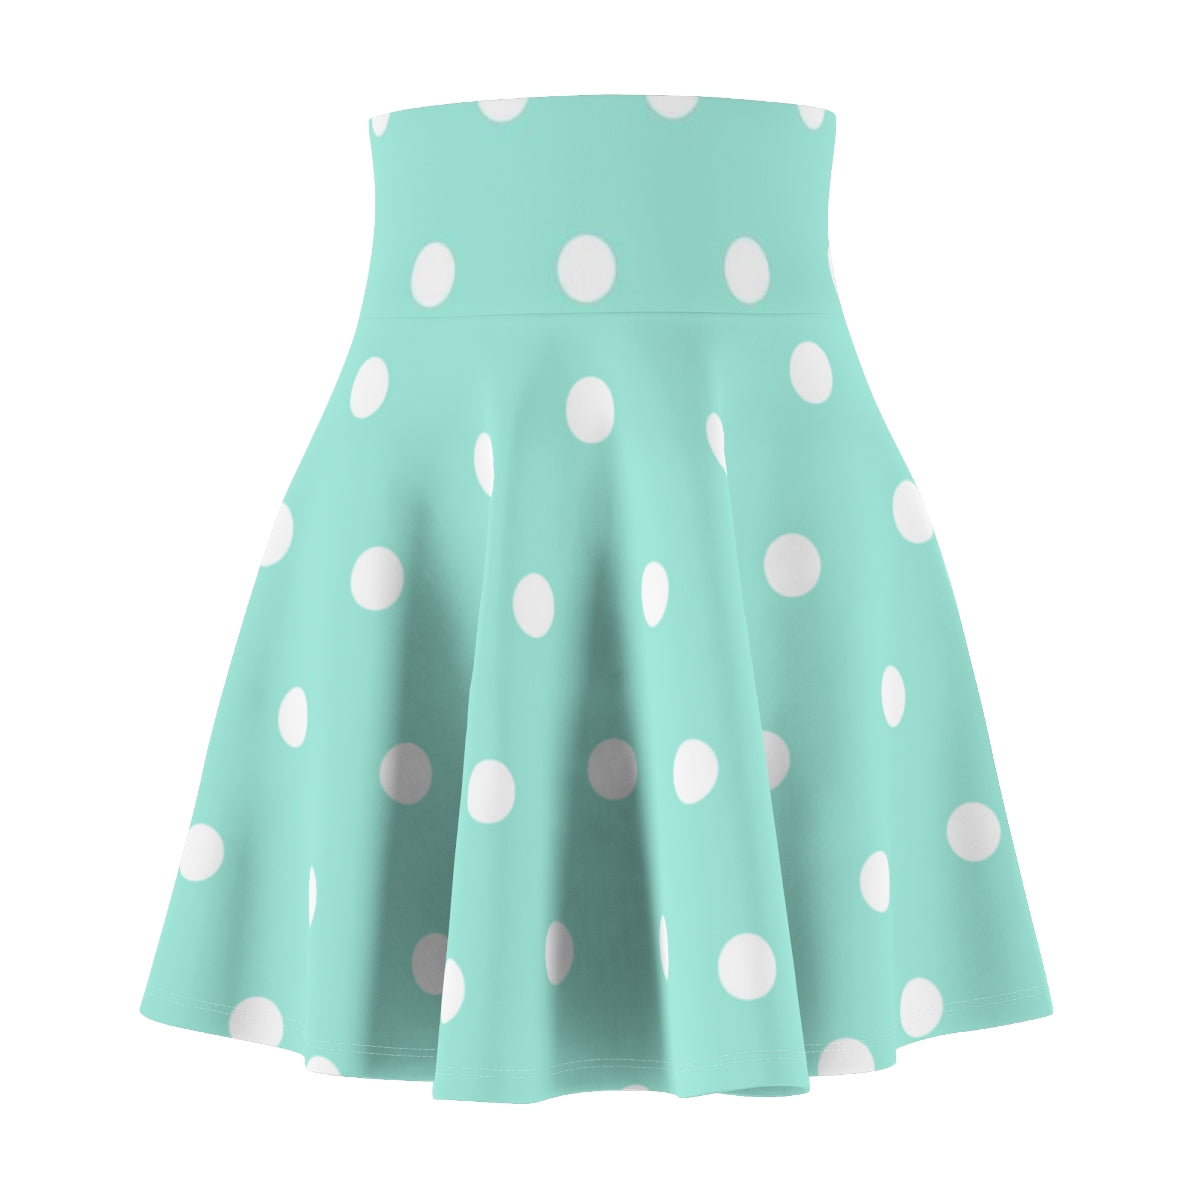 Women's Skater Skirt Green Polka Dot Print, Cute High Waist Skirt, Full Circle A Line Skirt